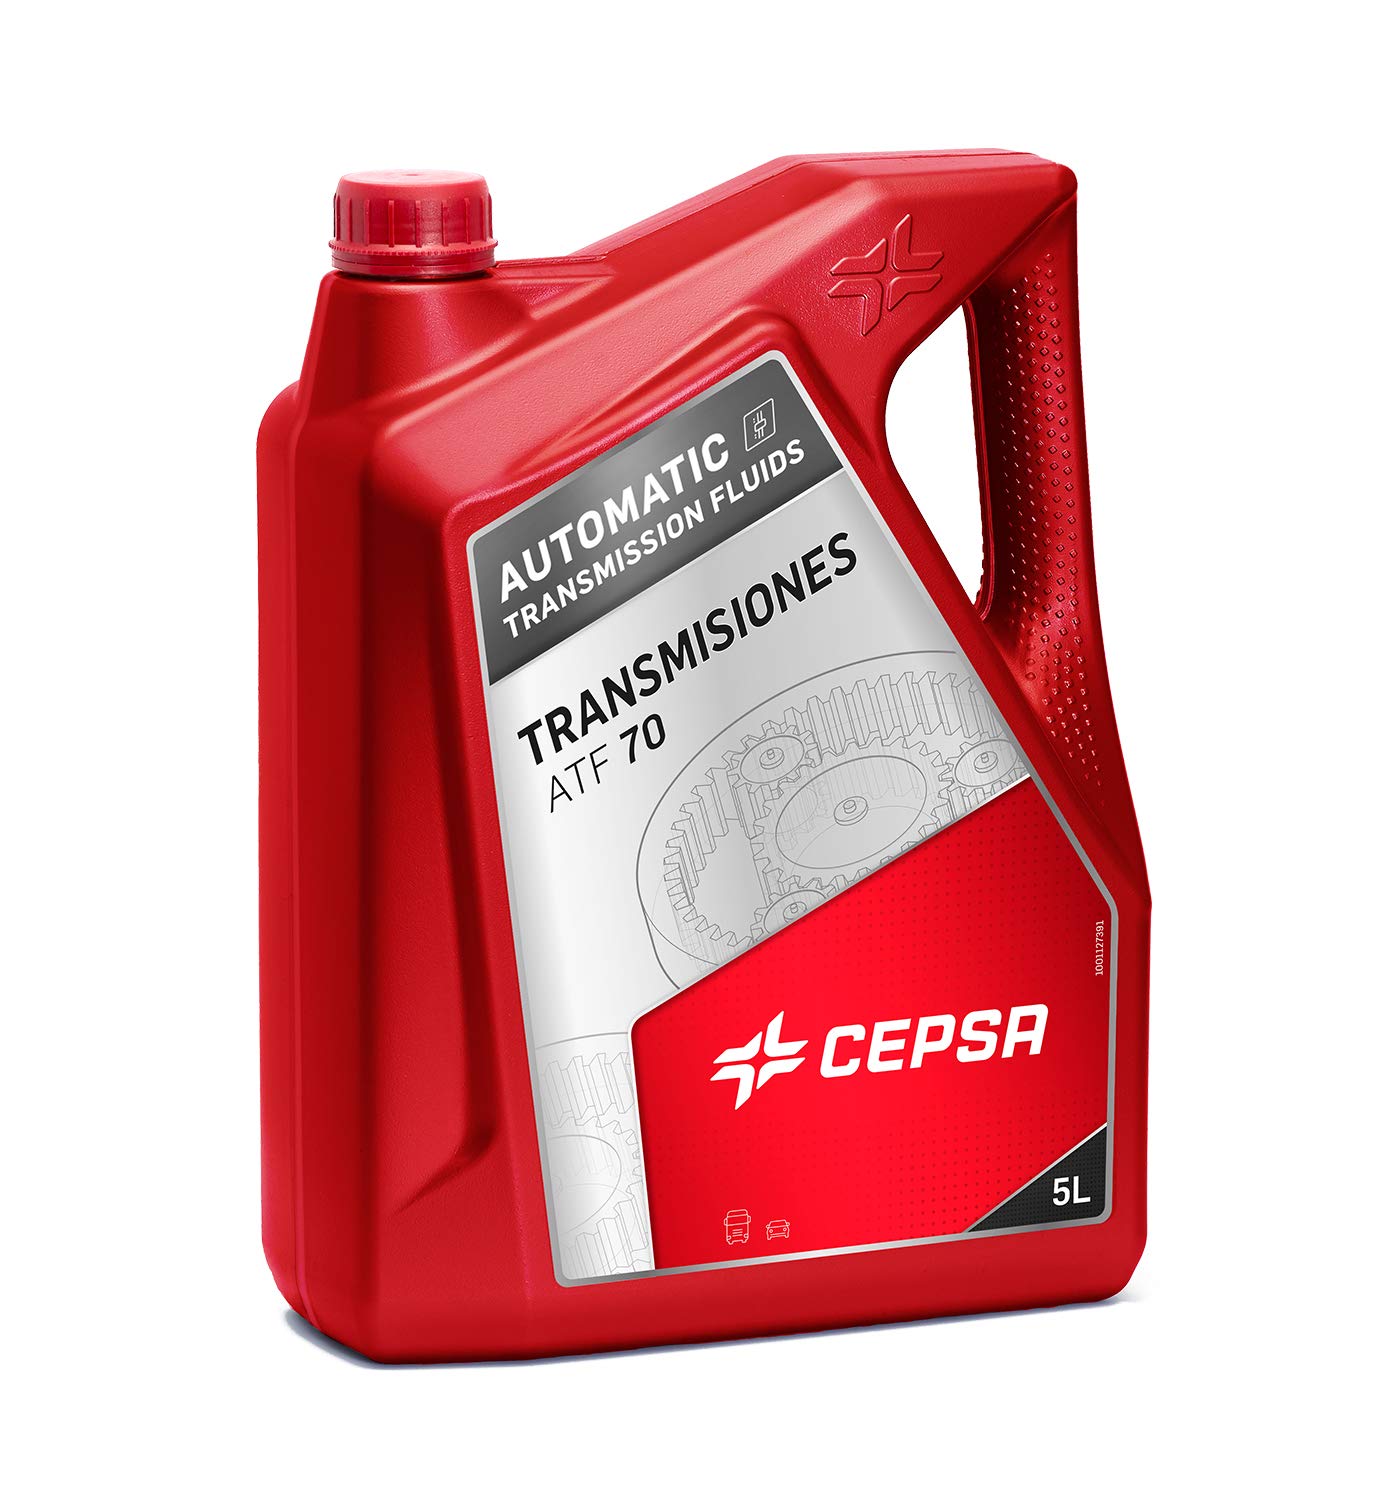 CEPSA 548363073 Mineralöl für Automatikgetriebe ATF 70, 5 Liter von CEPSA